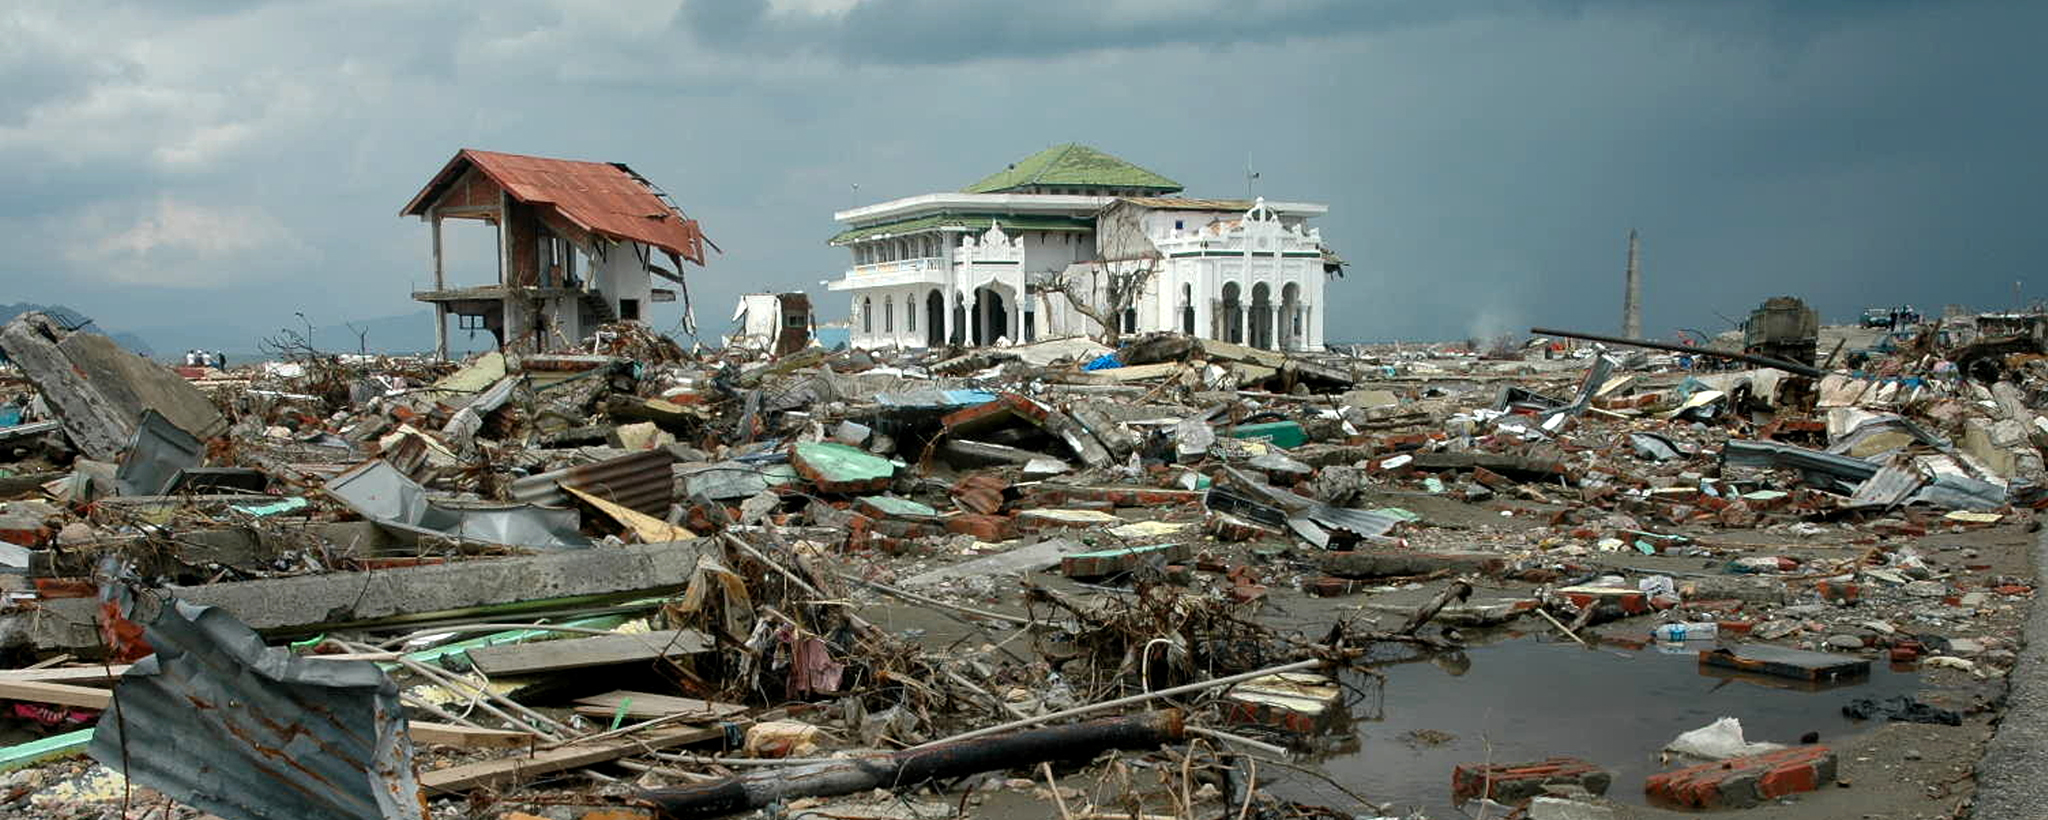 devastación después de un tsunami 